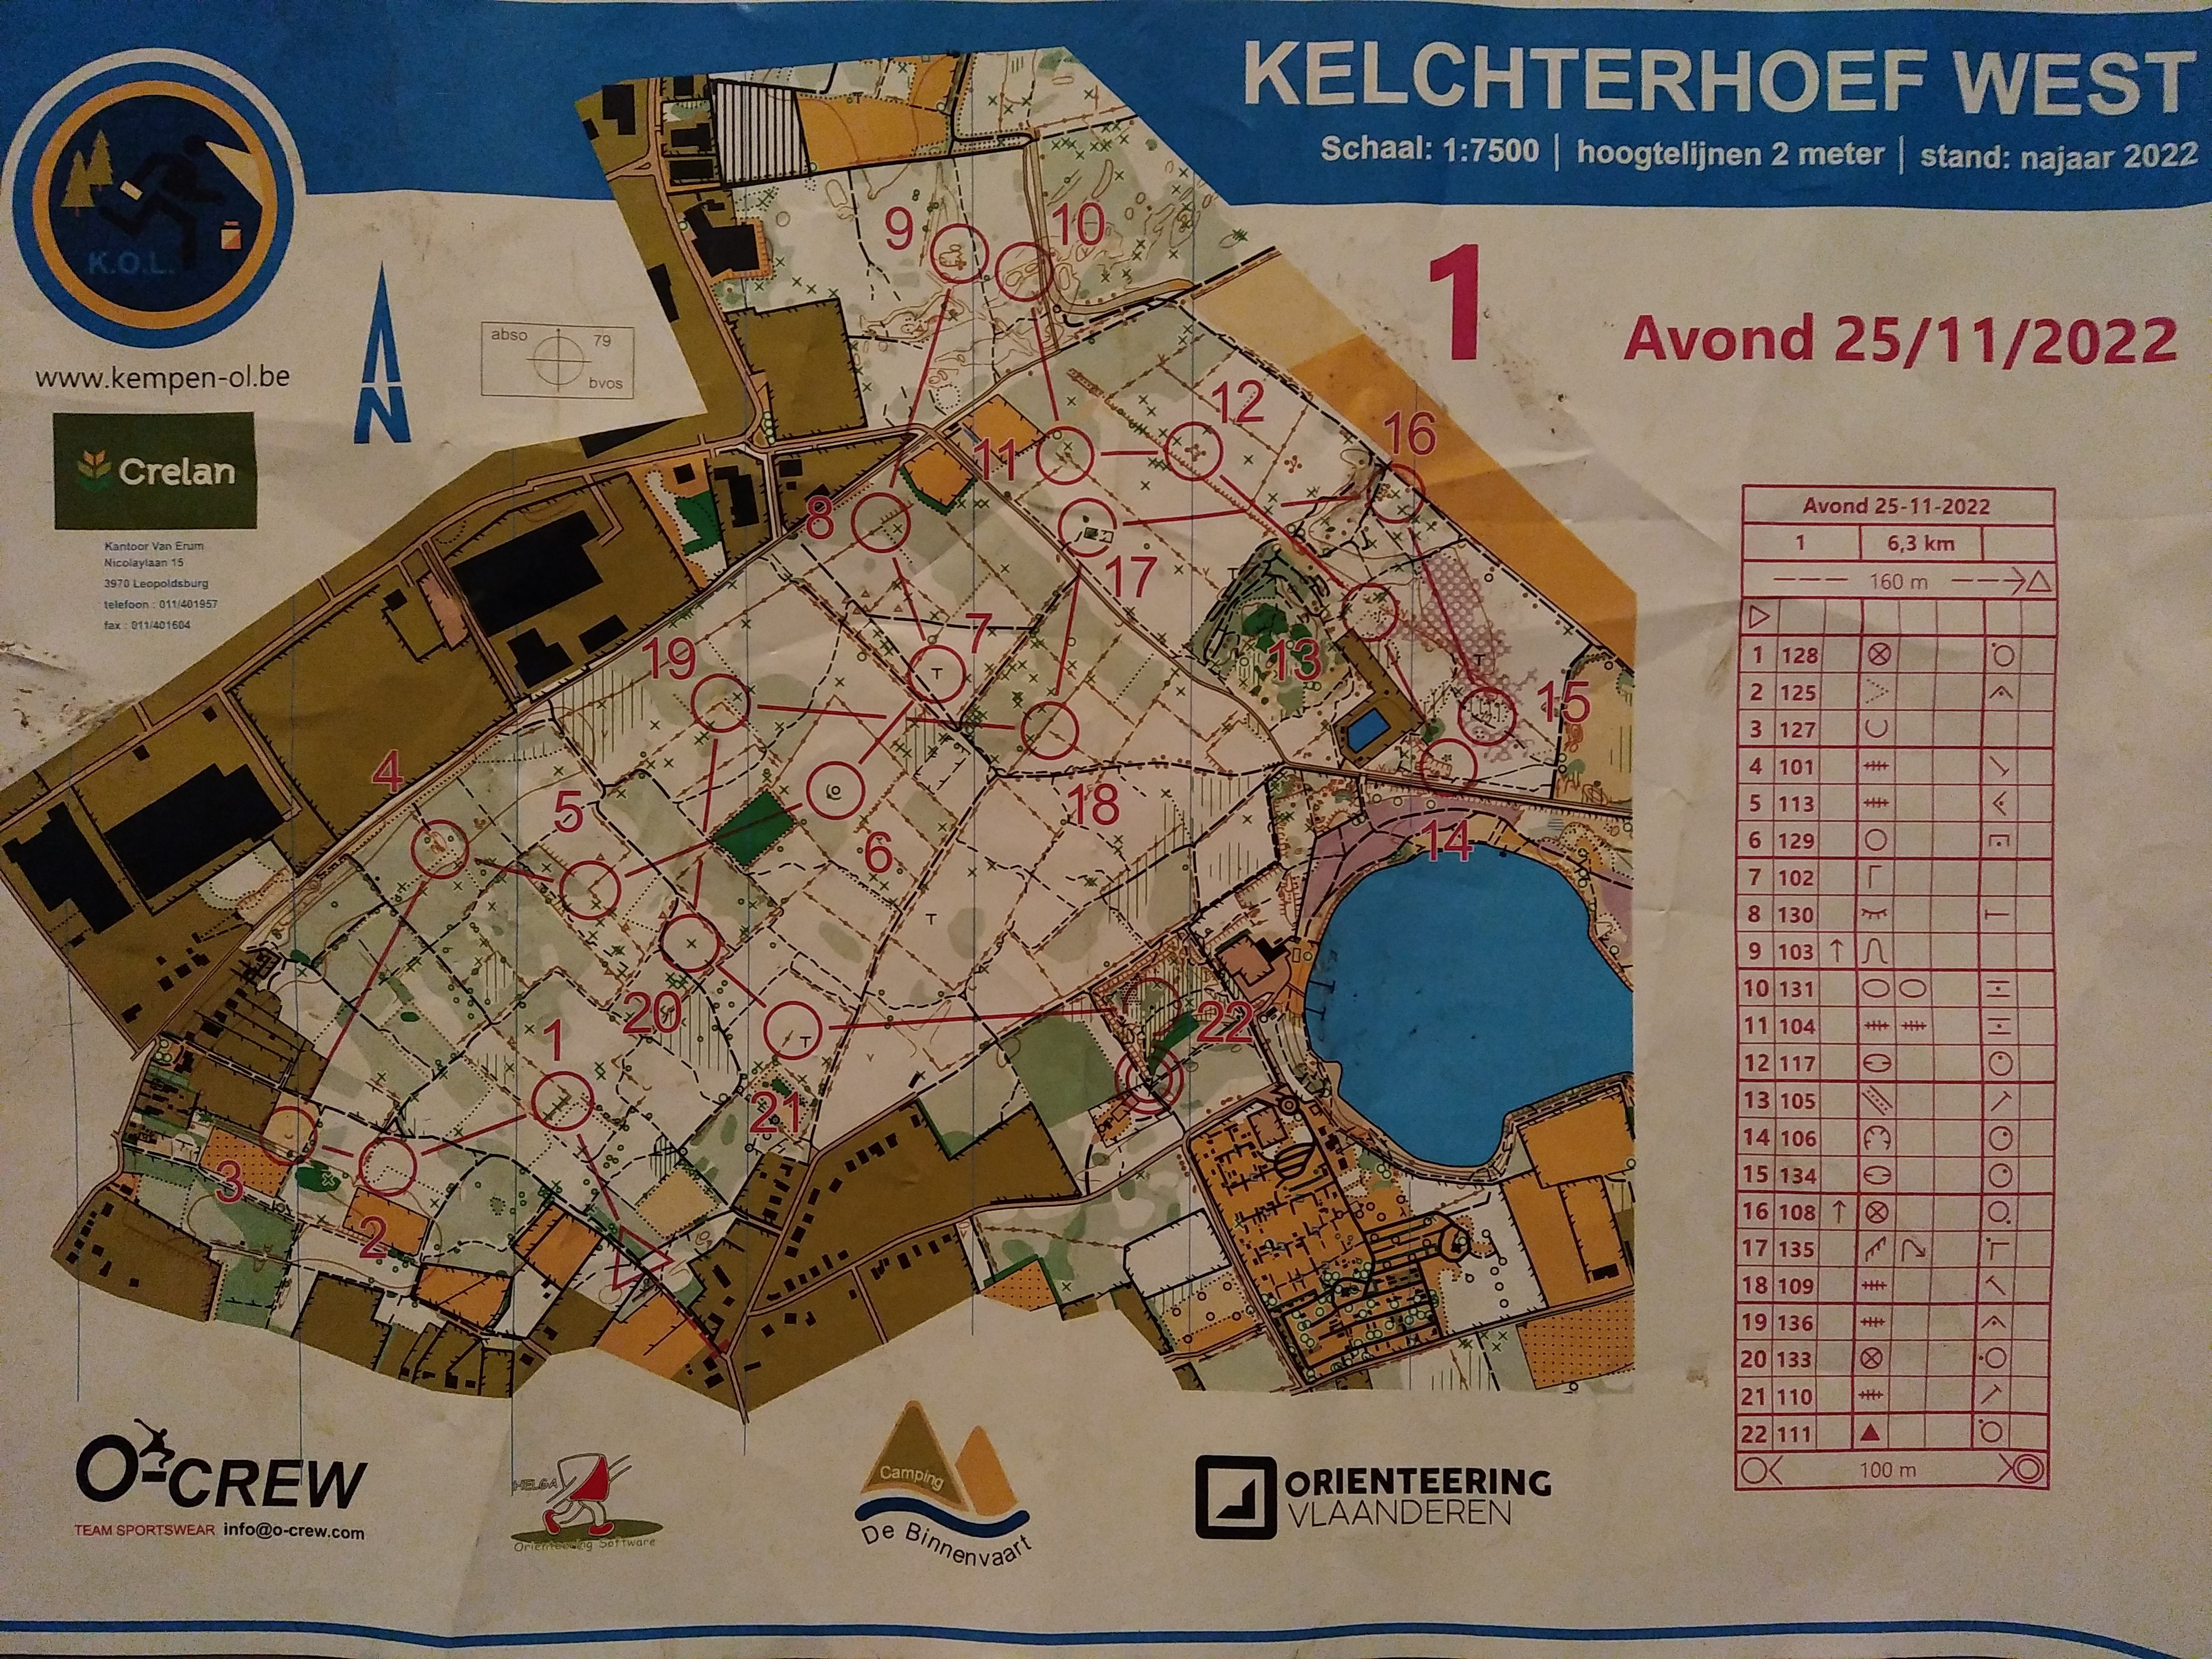 Kelchterhoef west, nacht,  Houthalen-Helchteren (25/11/2022)